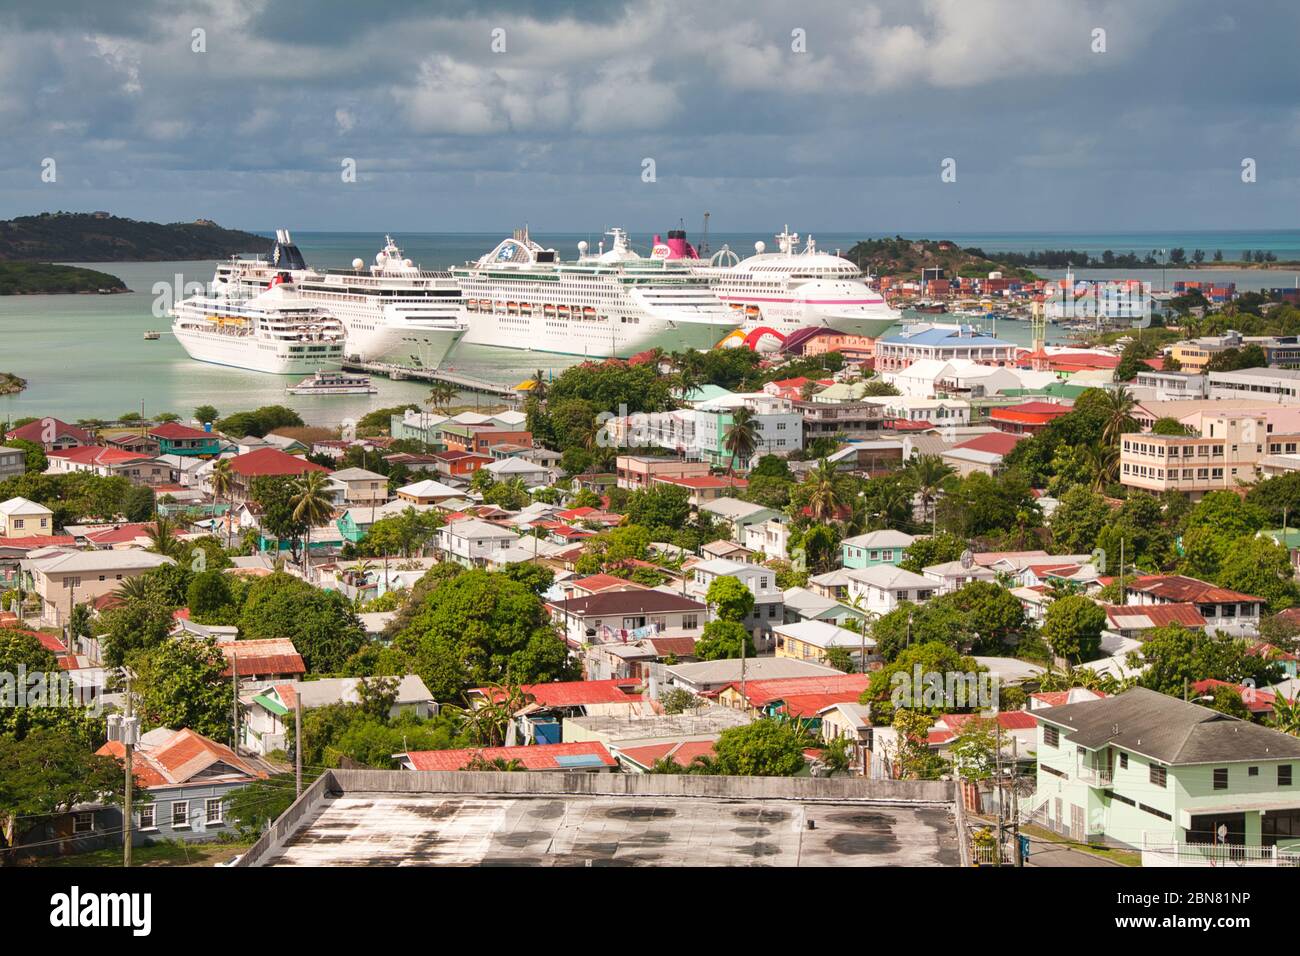 Vier Kreuzfahrtschiffe, die im Hafen von St. Johns, Antigua in der Karibik, Westindien, festgemacht sind, scheinen die Stadt durch ihre Größe zu dominieren Stockfoto